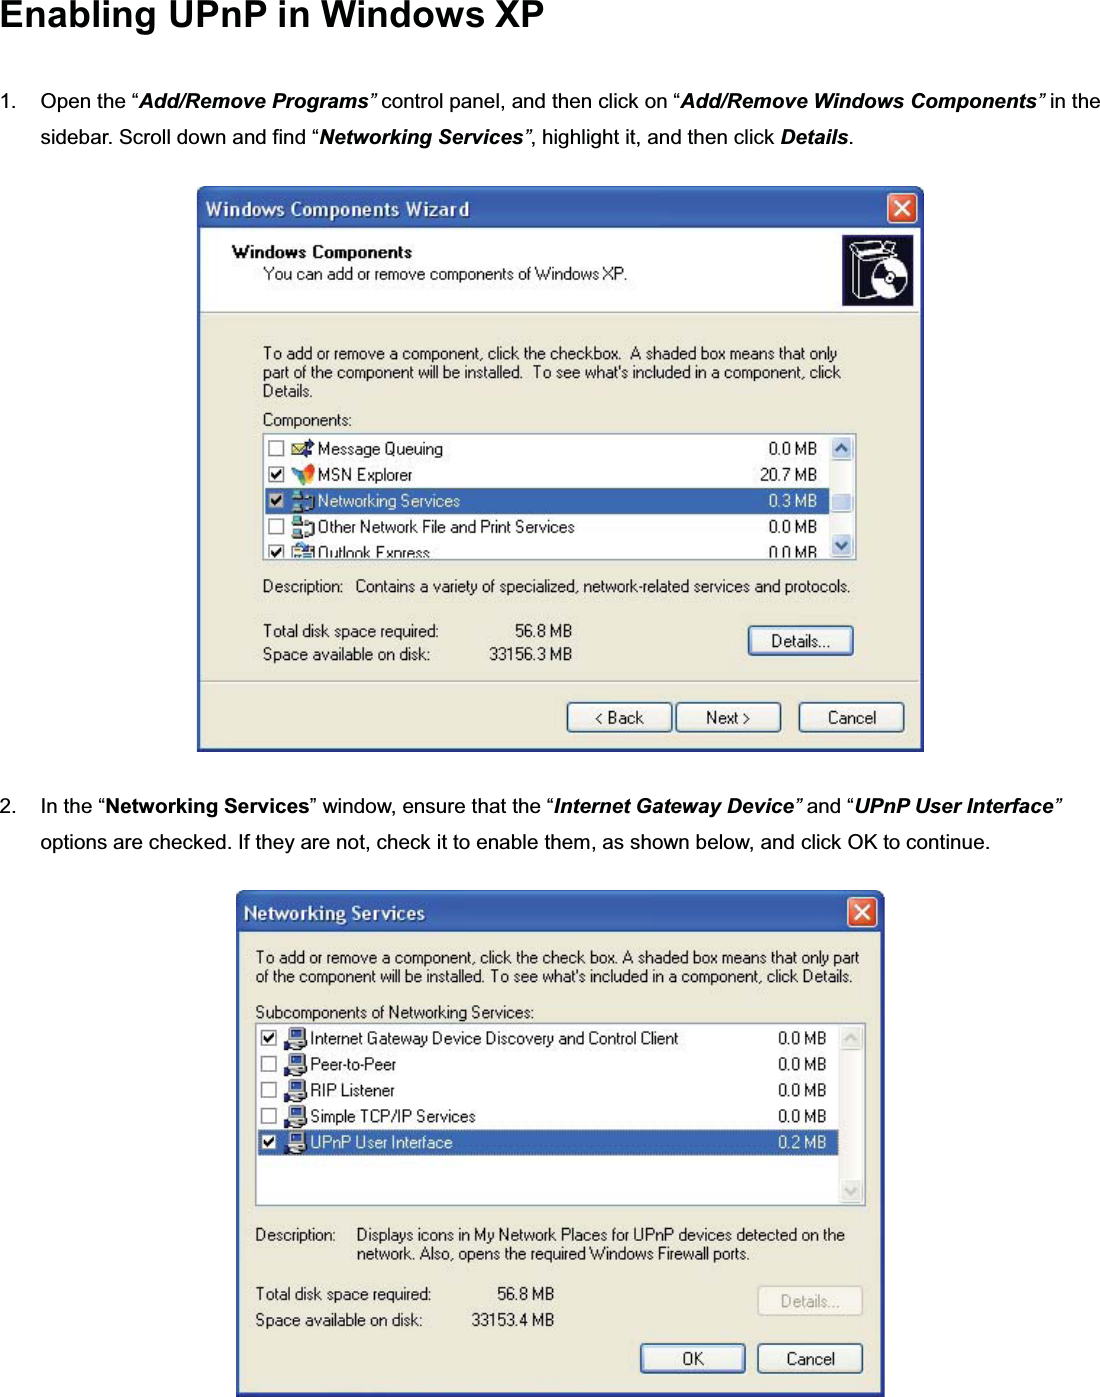 㻞㻢㻝Enabling UPnP in Windows XP 1. Open the “Add/Remove Programs”control panel, and then click on “Add/Remove Windows Components”in the sidebar. Scroll down and find “Networking Services”, highlight it, and then click Details.2. In the “Networking Services” window, ensure that the “Internet Gateway Device”and “UPnP User Interface”options are checked. If they are not, check it to enable them, as shown below, and click OK to continue.